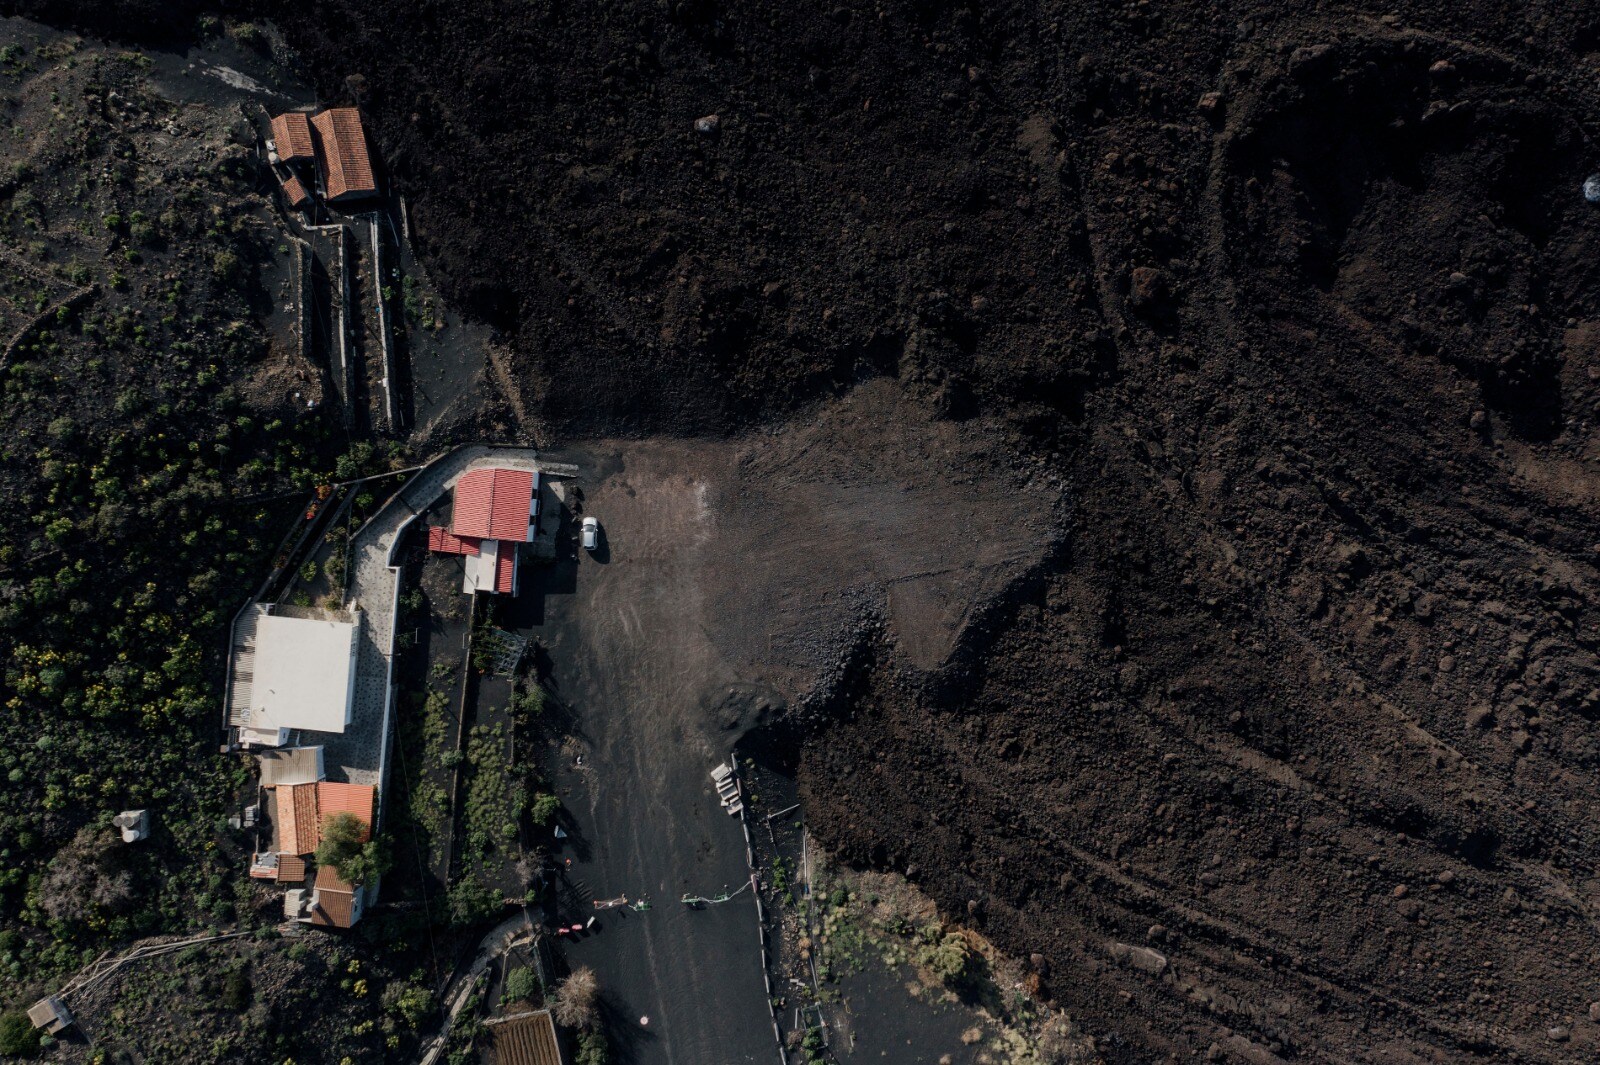 Fotos: Se intensifican los trabajos de reconstrucción de la zona del volcán